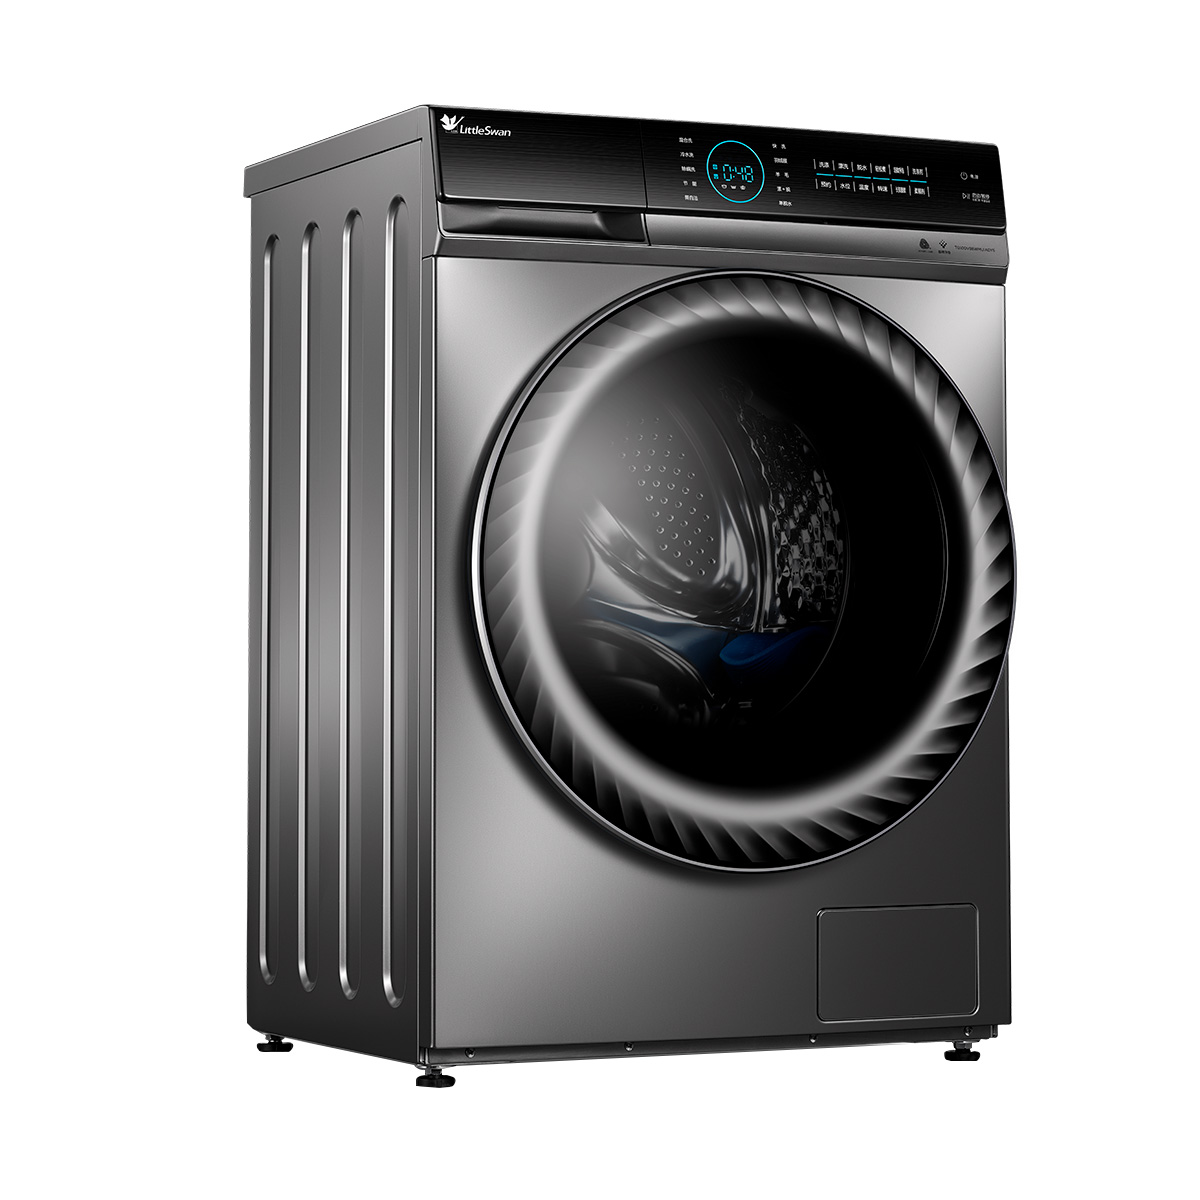 物联网共享洗衣机、24小时自助洗衣店设备投币式水洗设备-阿里巴巴